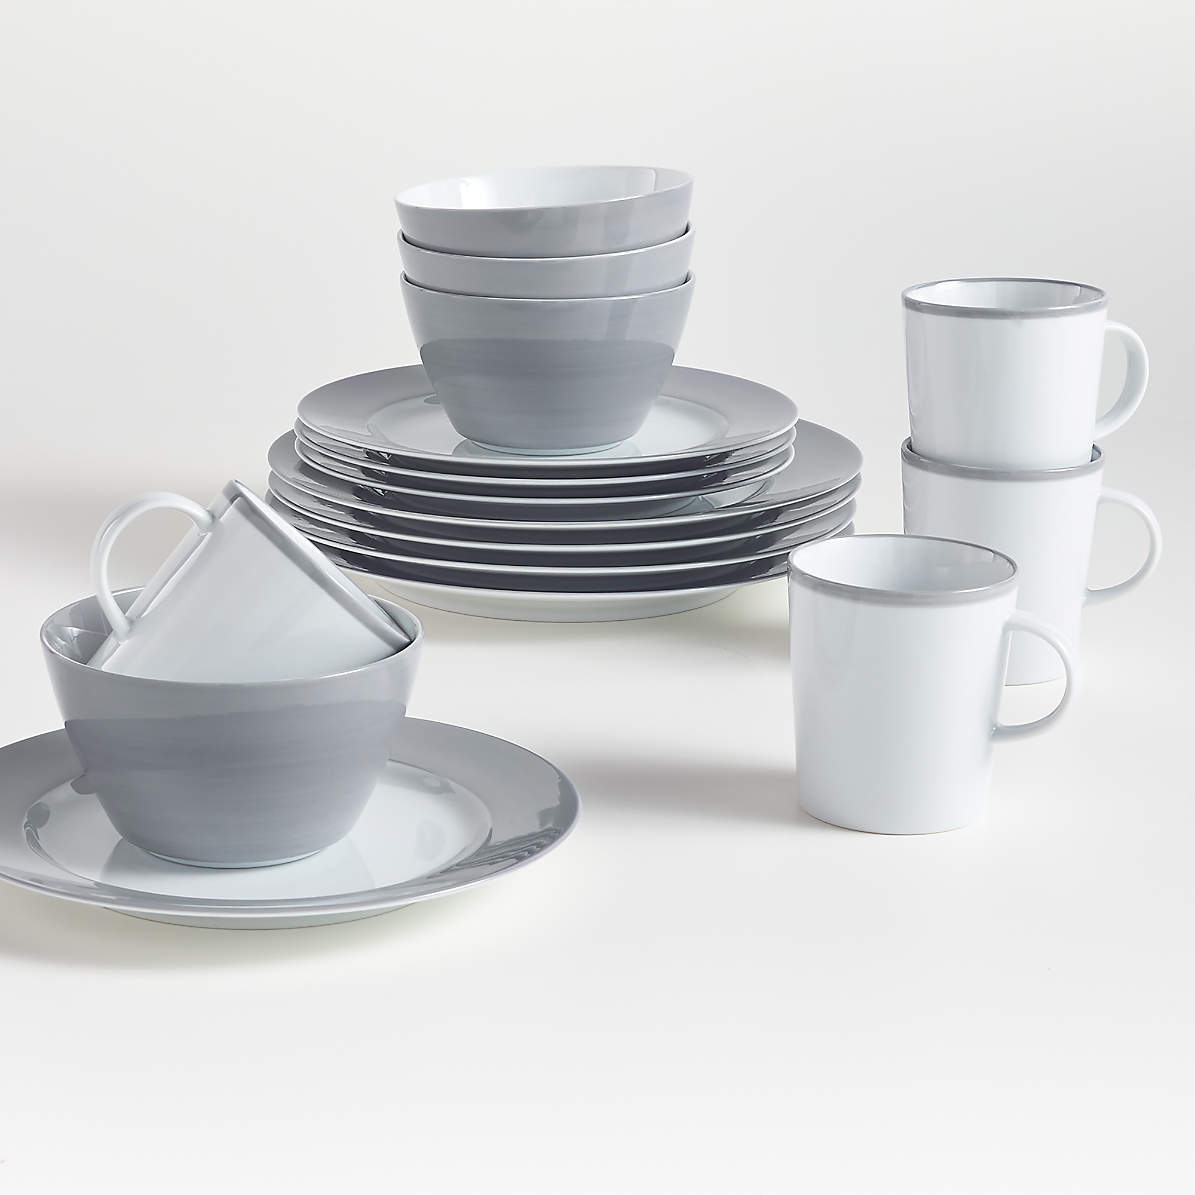 Singer Soup Plates Set New Port Porcelain Plates Tableware 6 pieces 